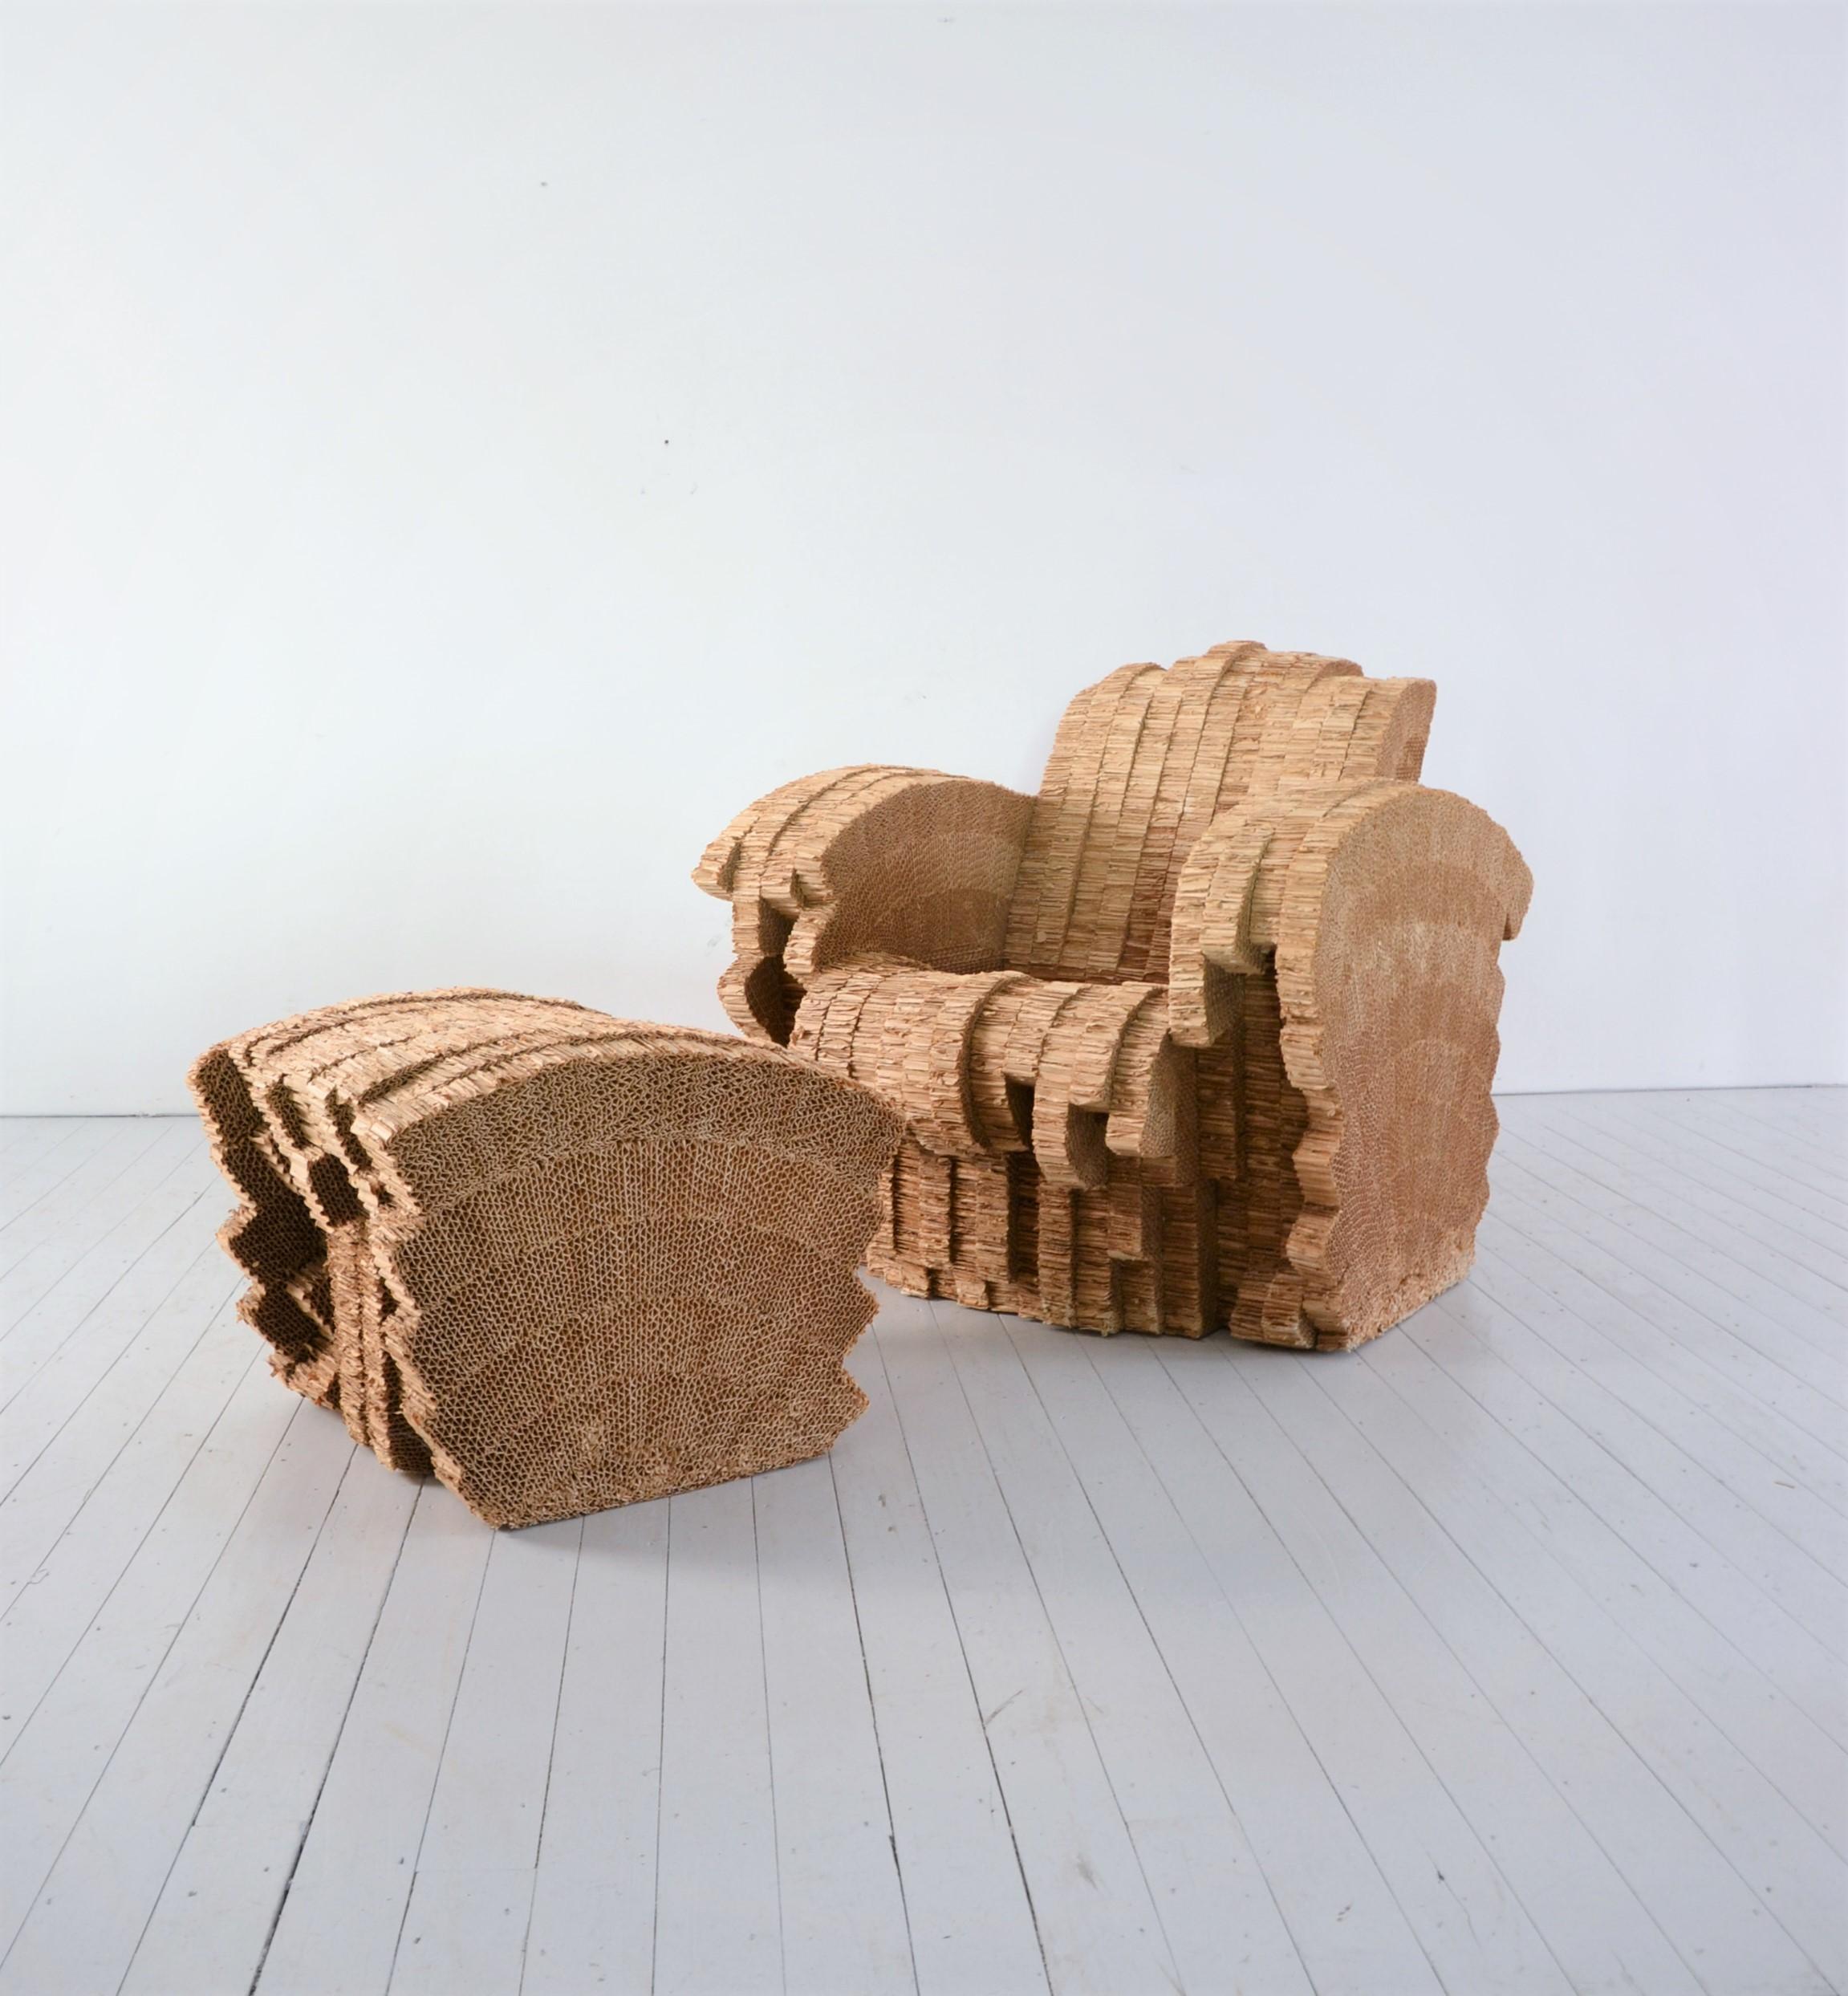 Sessel und Ottomane aus laminiertem und geschnittenem Karton, entworfen vom bekannten Architekten Frank O. Gehry und hergestellt von VITRA - Auflage 100 Stück.
Beide Stücke sind mit einer Messing-Signatur versehen und von Vitra nummeriert.